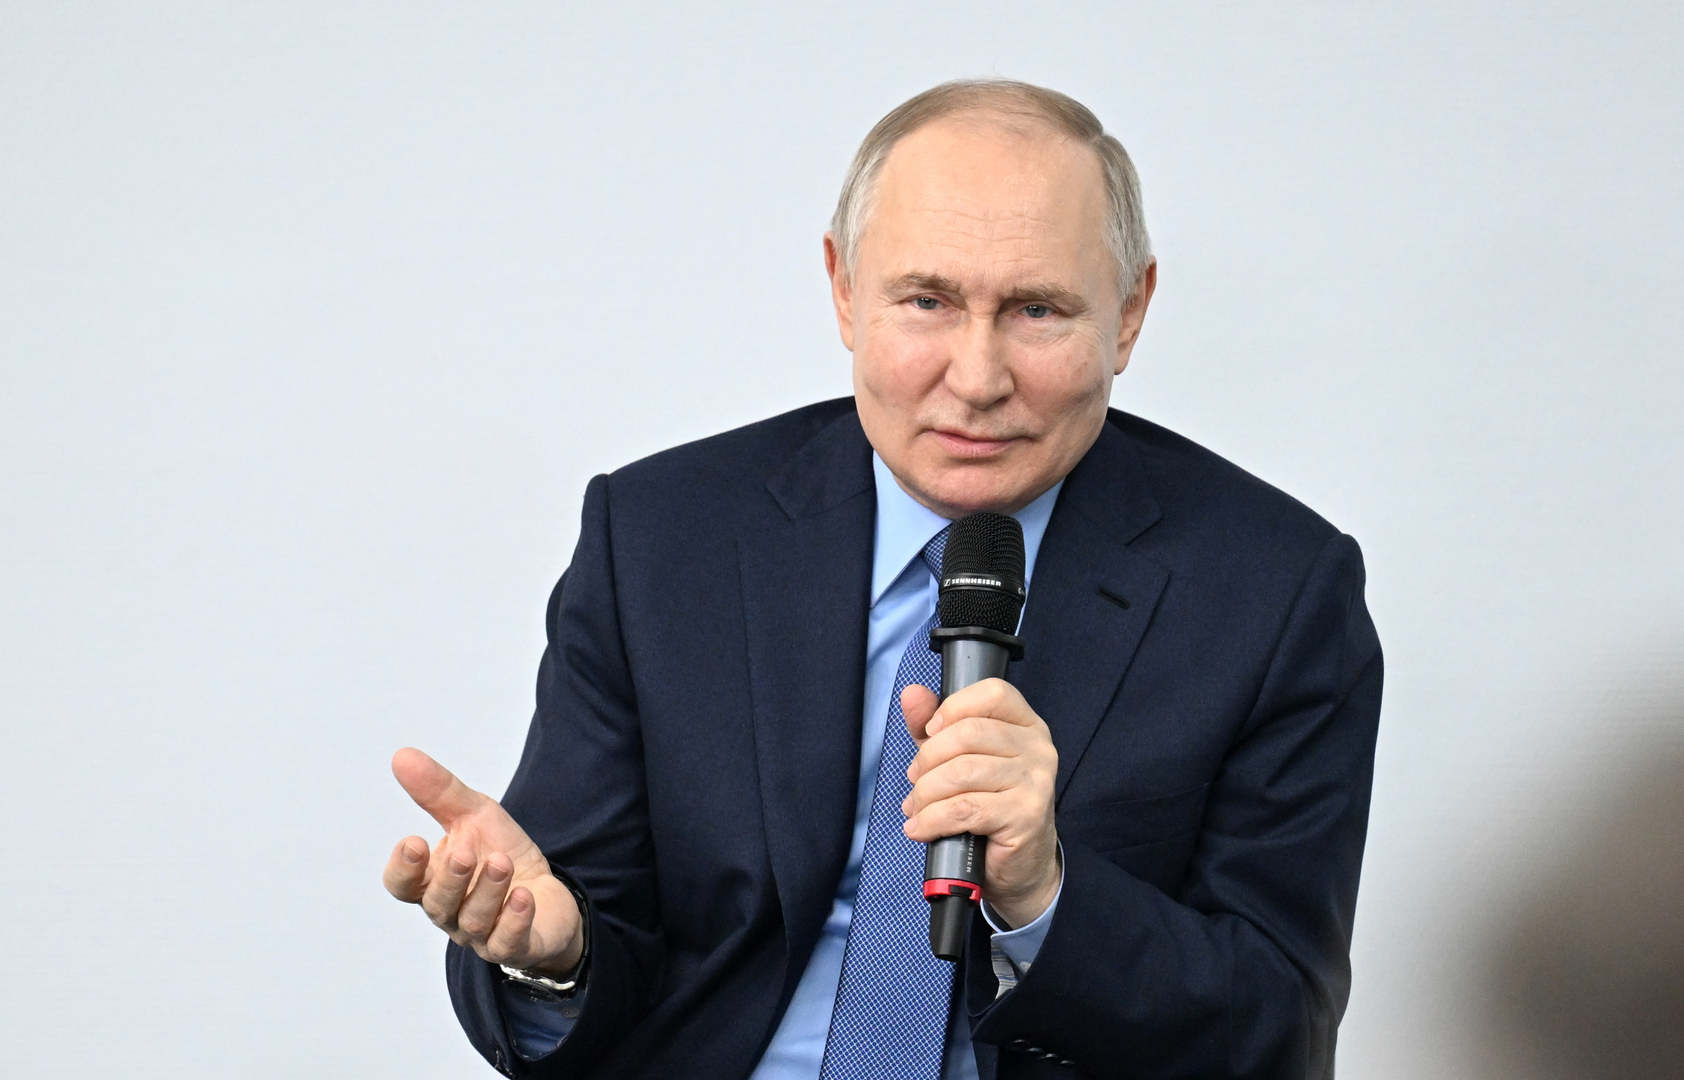 بوتين: روسيا بلد مكتف ذاتيا بكل معنى الكلمة